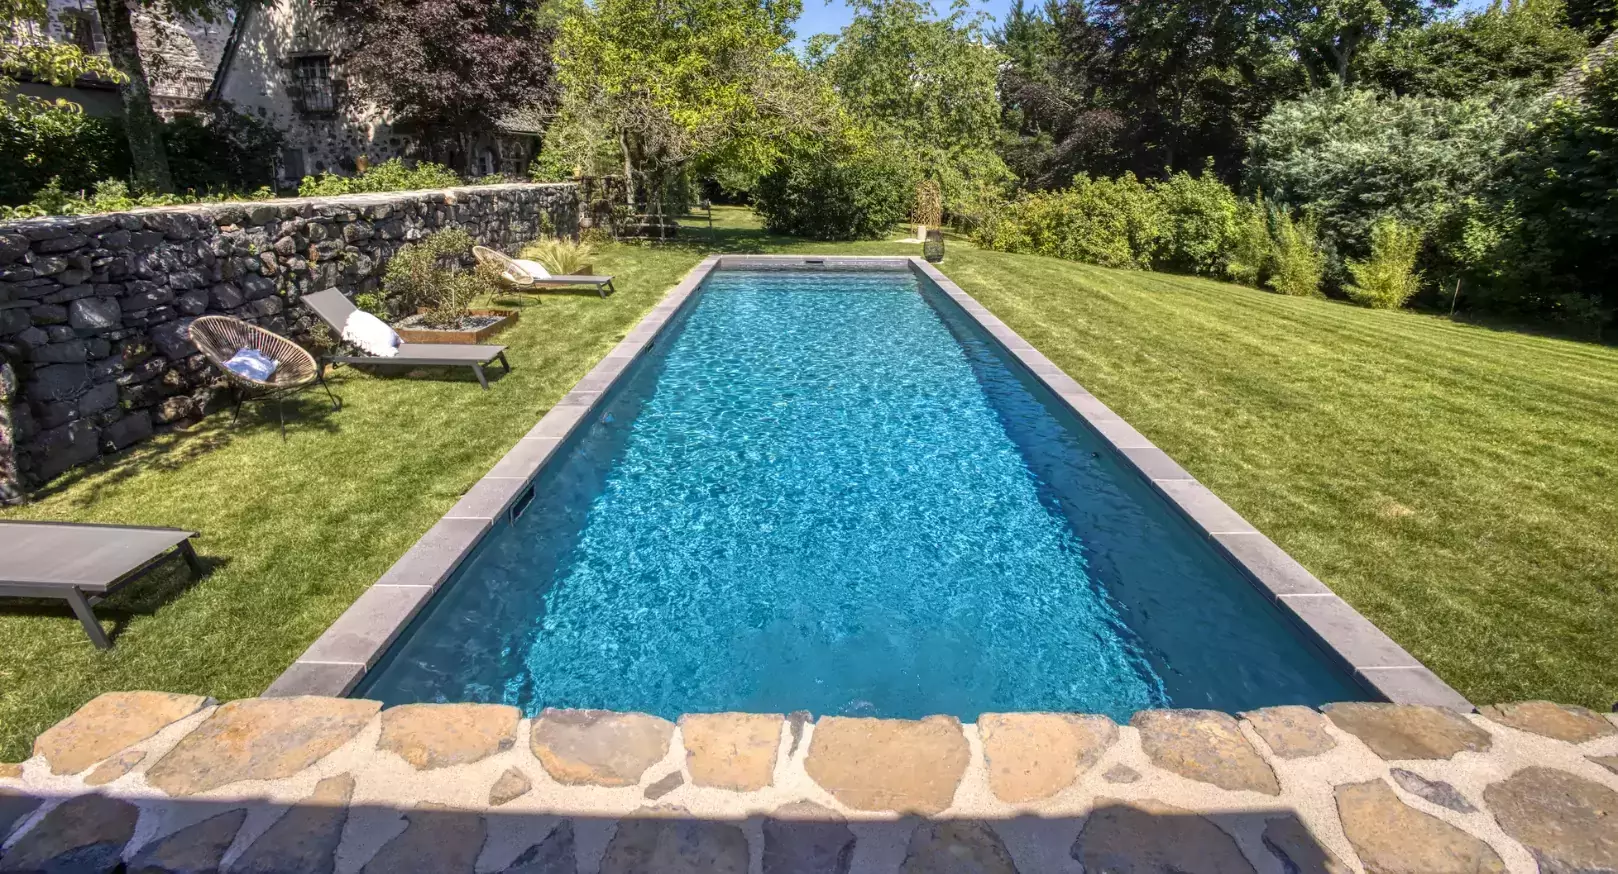 Installation d'une lane de natation dans le jardin d'un domicile, placé dans un des plus attrayants villages français.